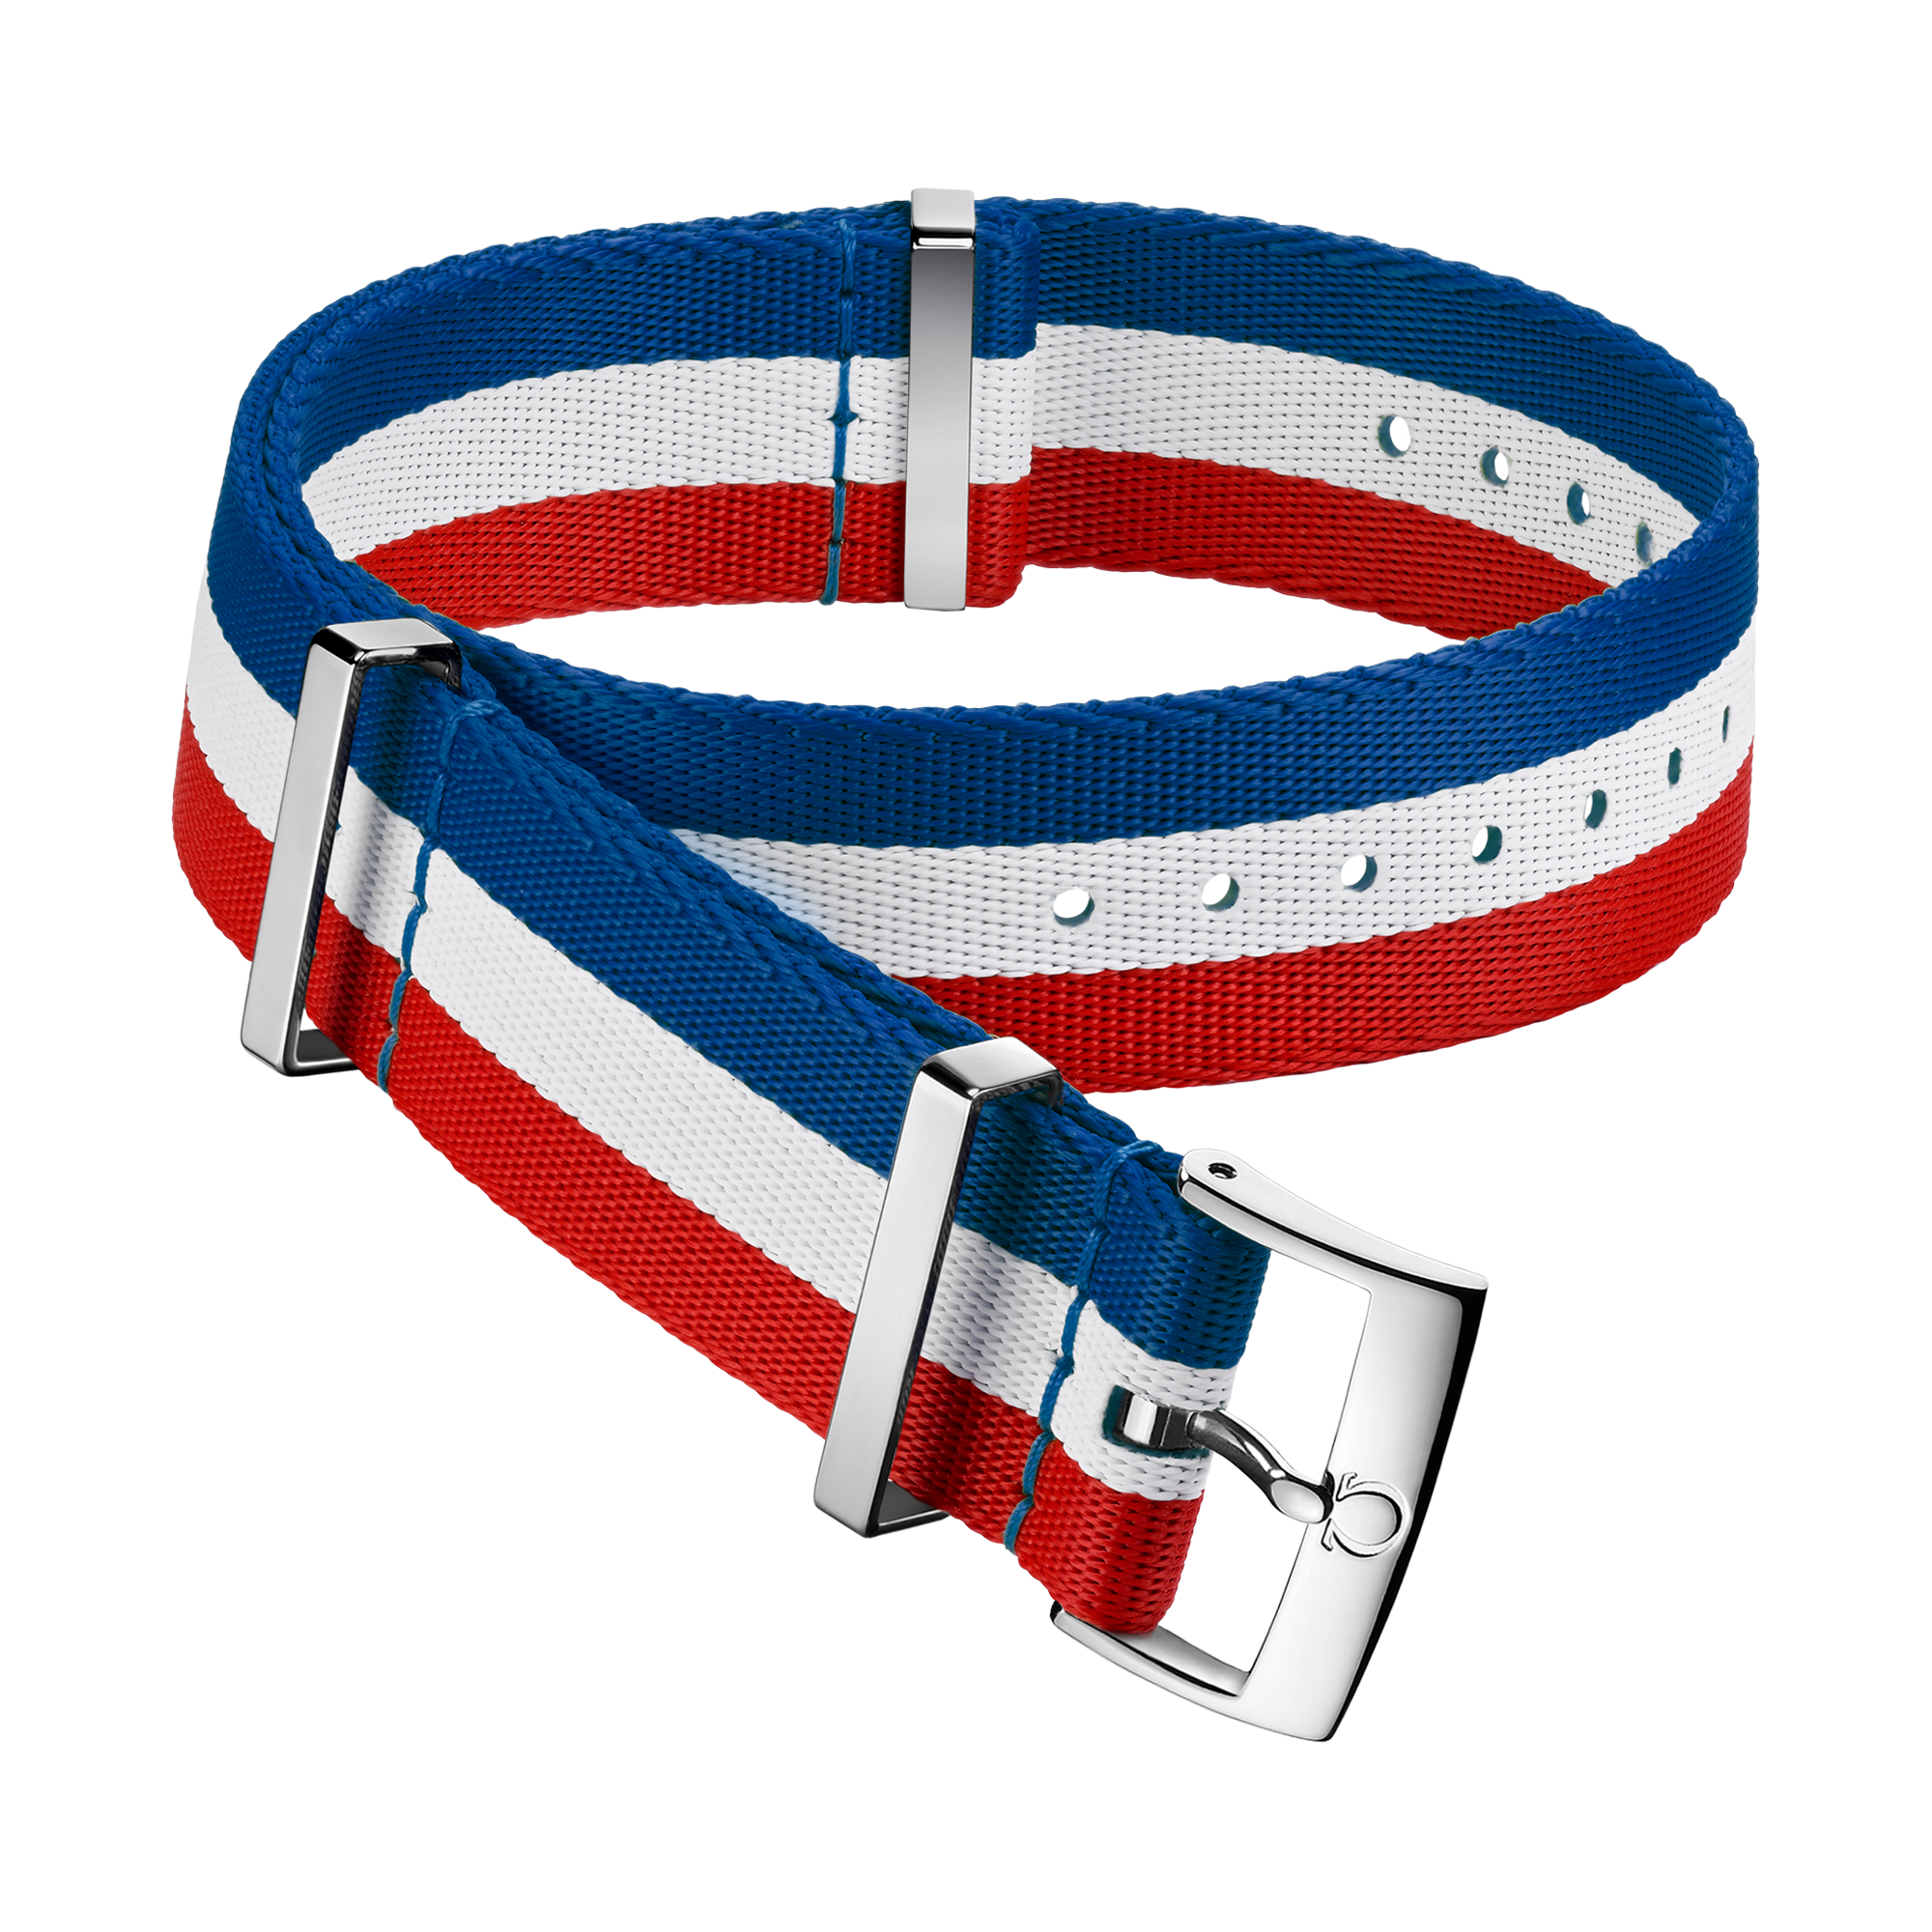 Bracelete NATO - Bracelete em poliamida azul, branca e vermelha com 3 faixas - 031CWZ010674